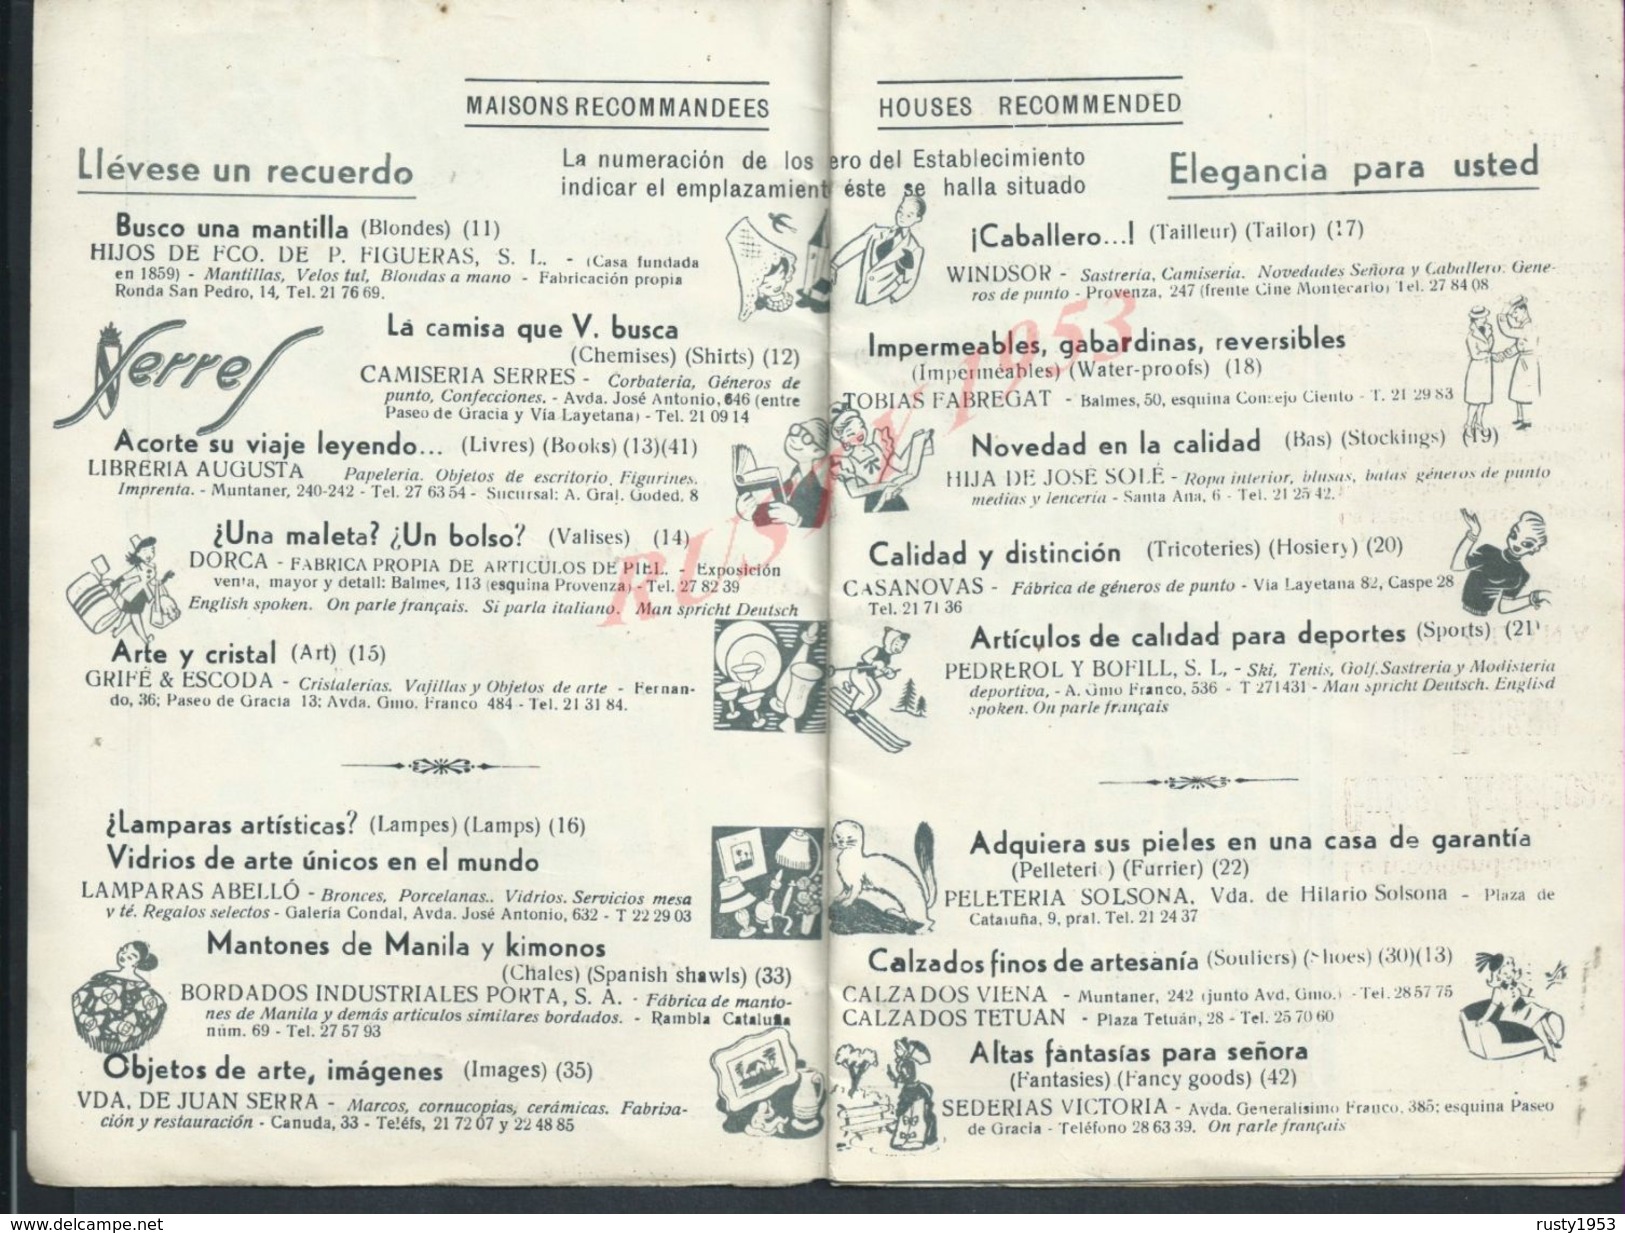 ESPAGNE ANCIEN PLAN DE BARCELONE 1950 AVEC DIVERS ENSEIGNES PUBLICITAIRES : - Spain